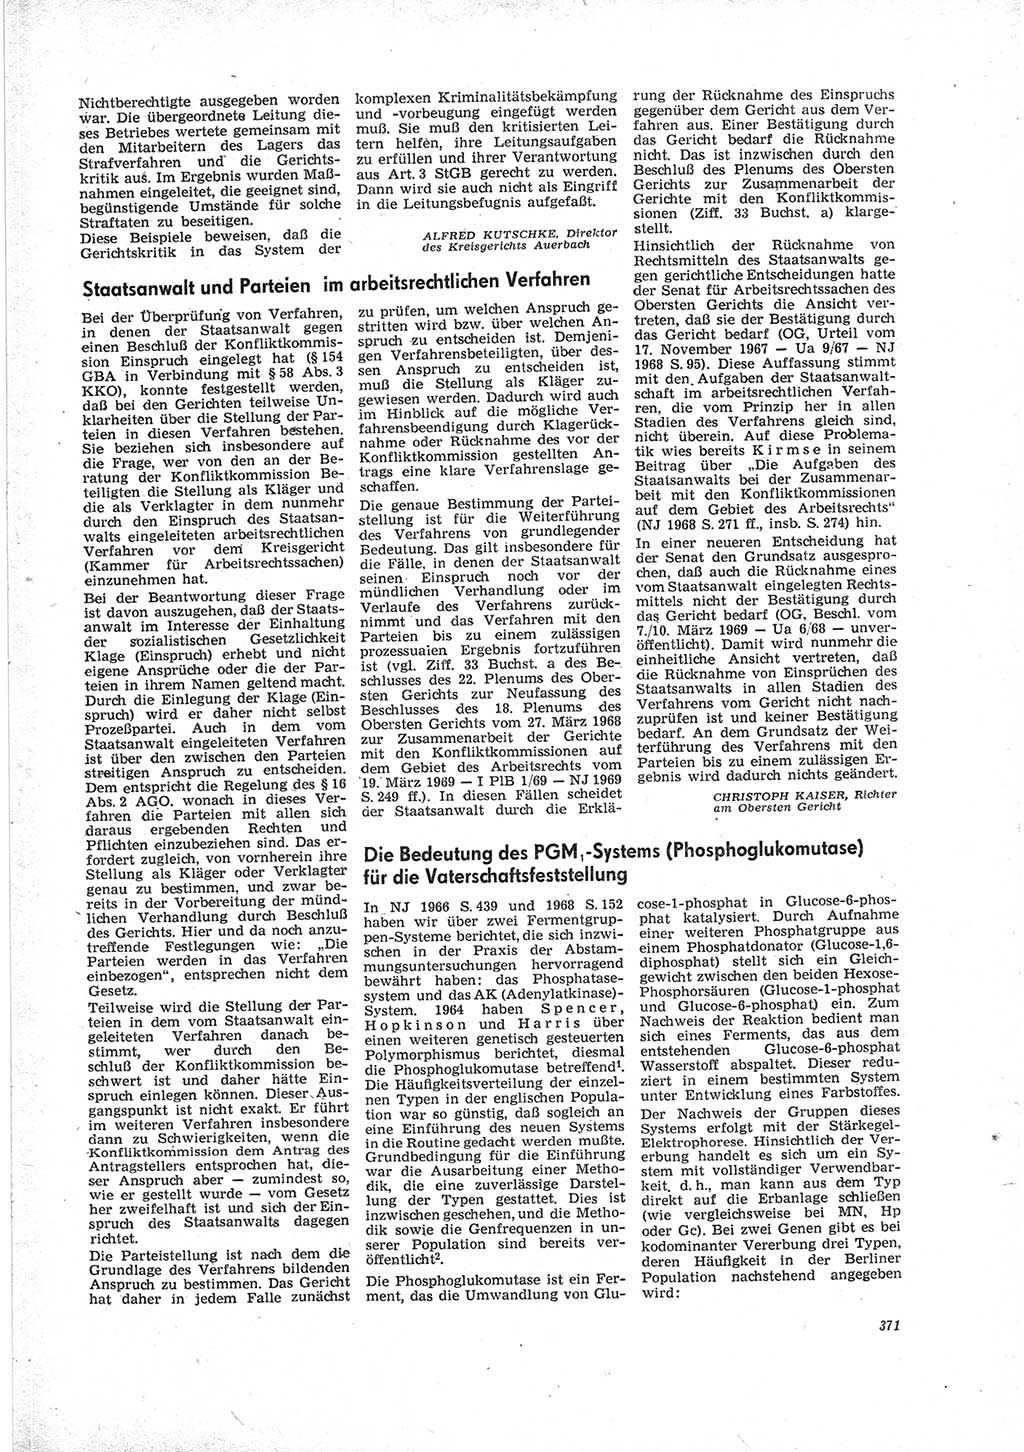 Neue Justiz (NJ), Zeitschrift für Recht und Rechtswissenschaft [Deutsche Demokratische Republik (DDR)], 23. Jahrgang 1969, Seite 371 (NJ DDR 1969, S. 371)